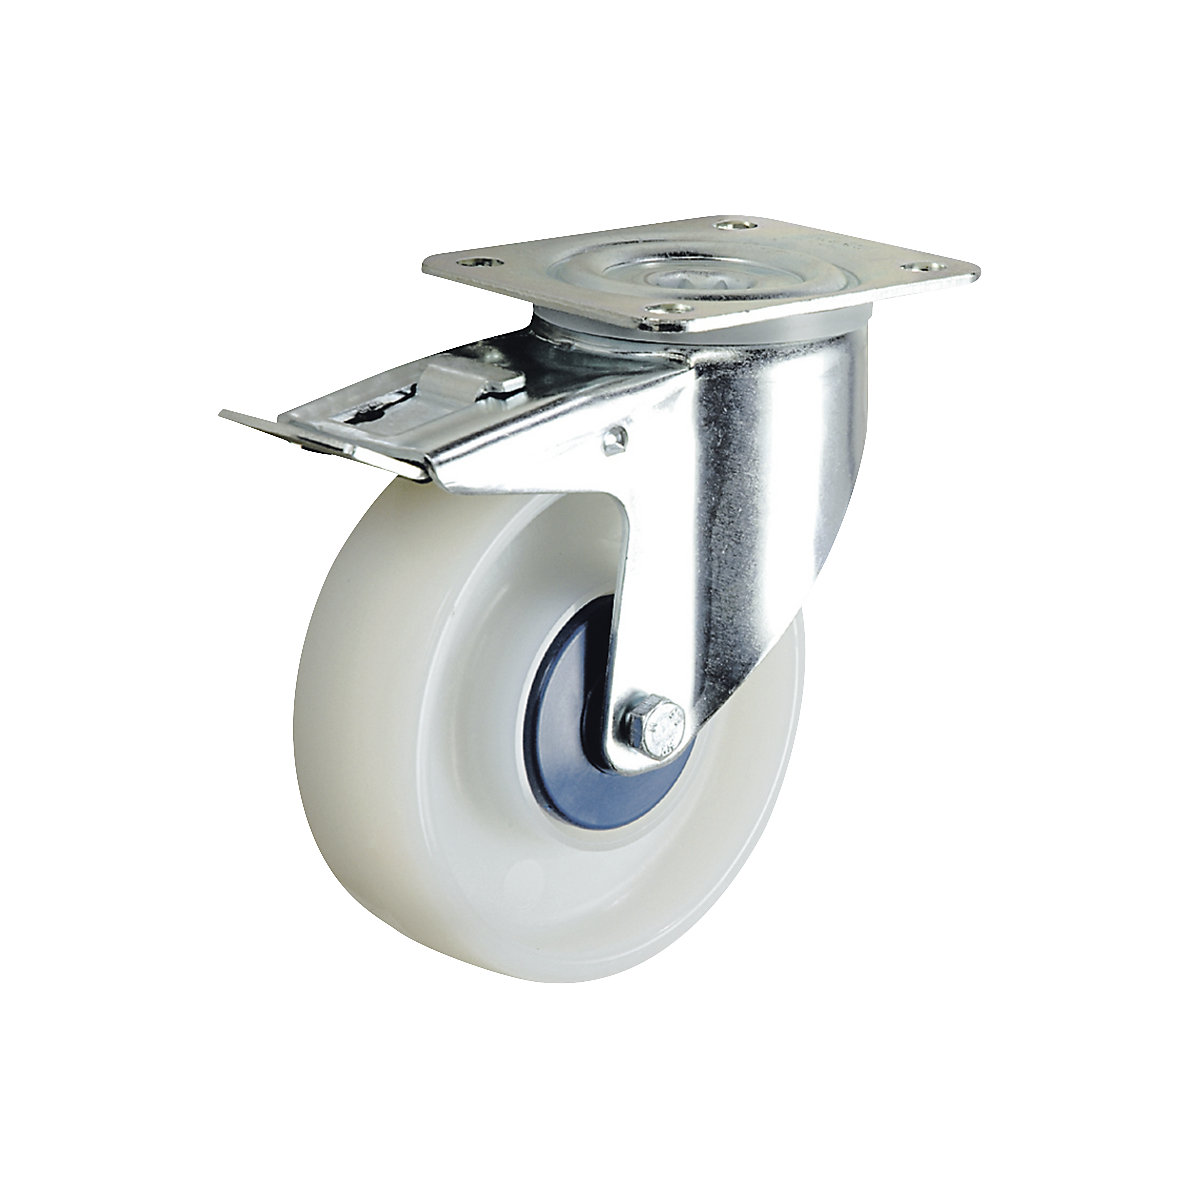 Roue polyamide, blanche – TENTE, Ø x largeur roues 125 x 40 mm, roulette pivotante avec blocage double-3